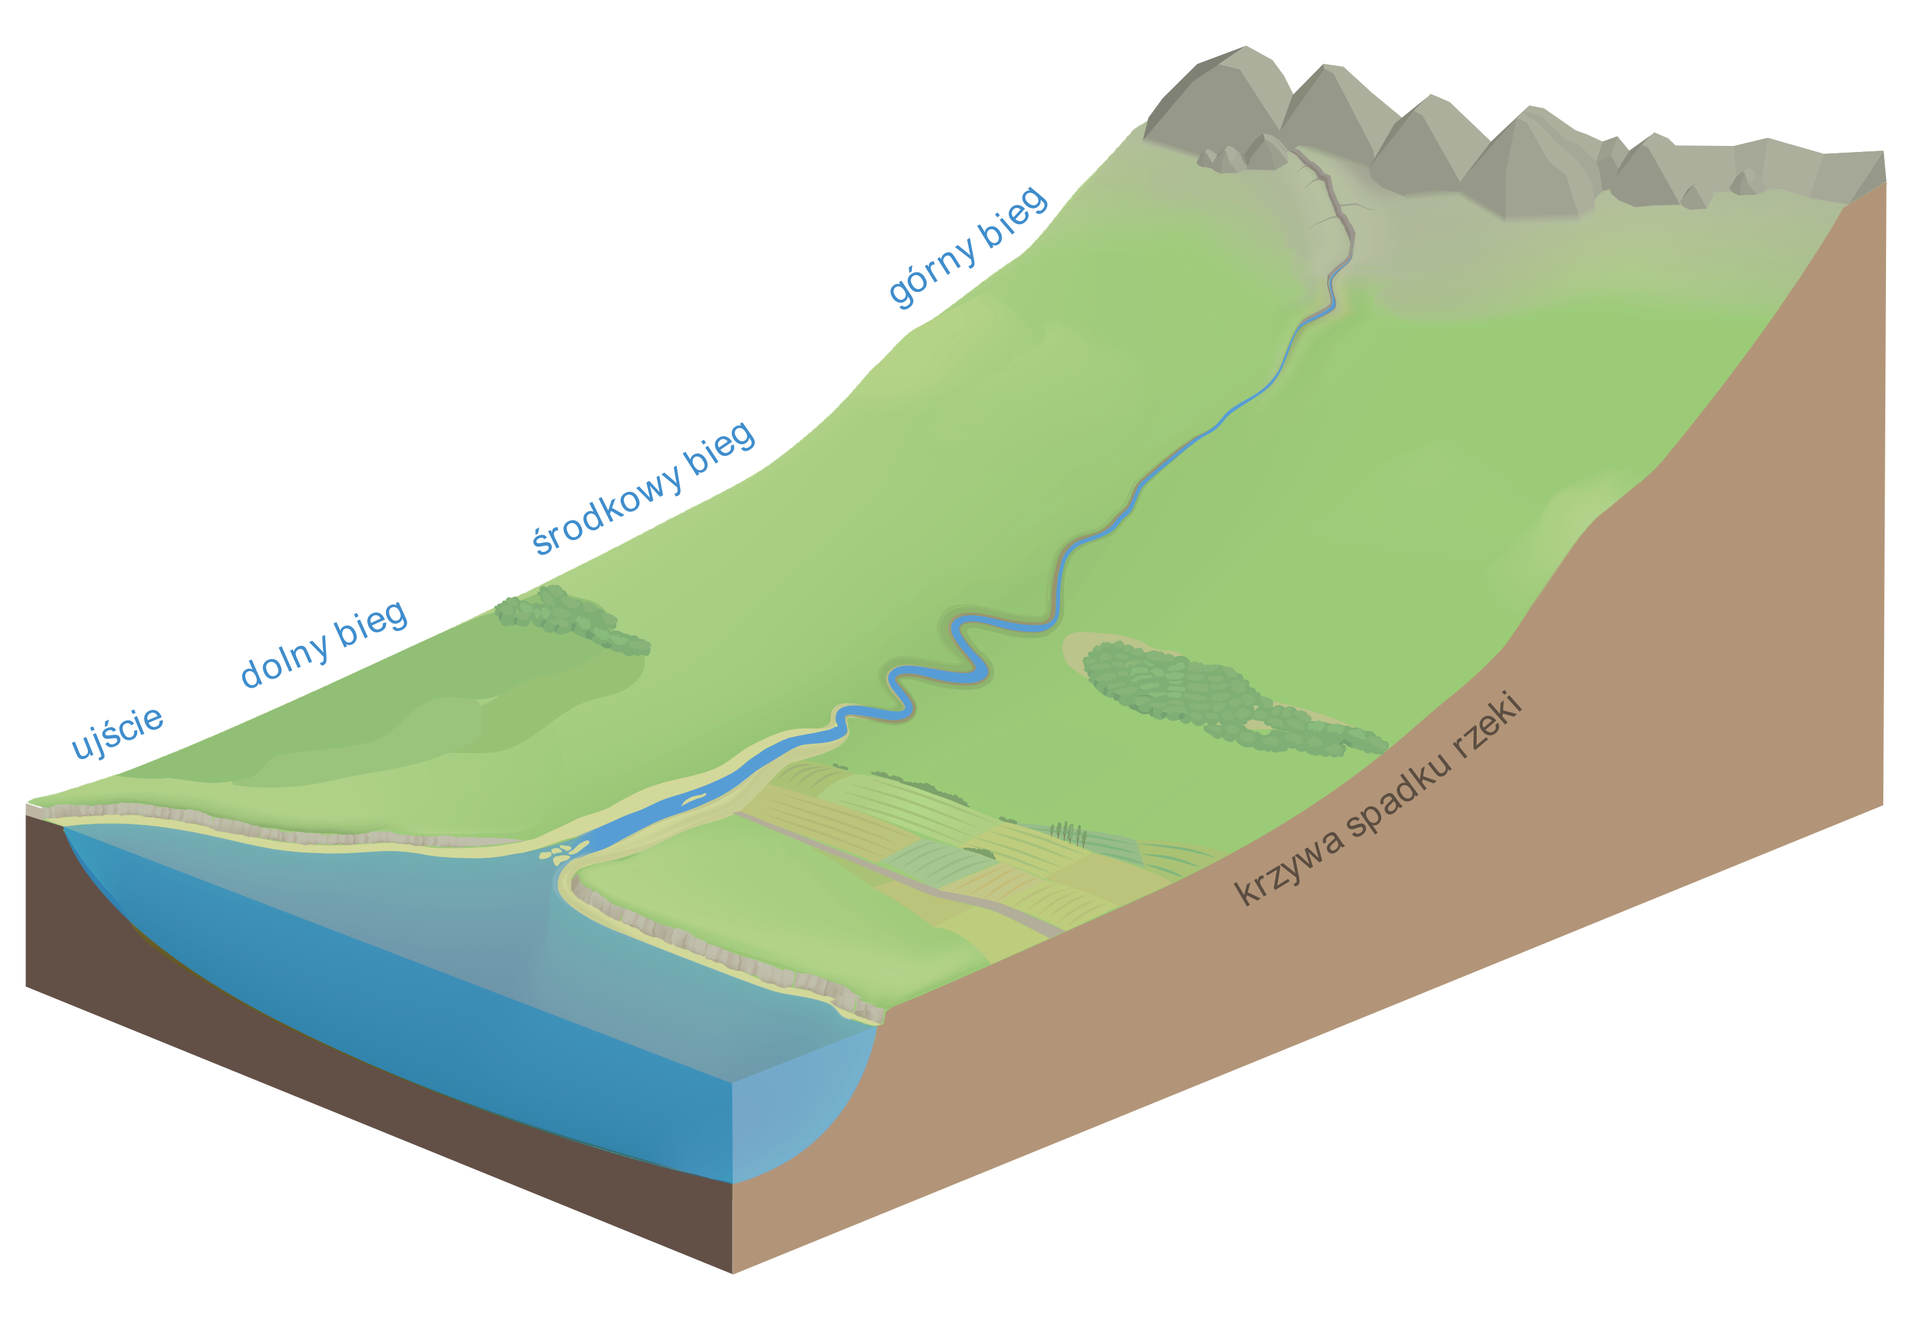 Ilustracja przedstawia wycinek Ziemi. Fragment powierzchni Ziemi jest nachylony, porośnięty trawą. Z góry płynie rzeka. W dole zbiornik wodny. Na skraju wycinka opisano odcinki biegu rzeki: górny, środkowy i dolny. Opisano jeszcze ujście.